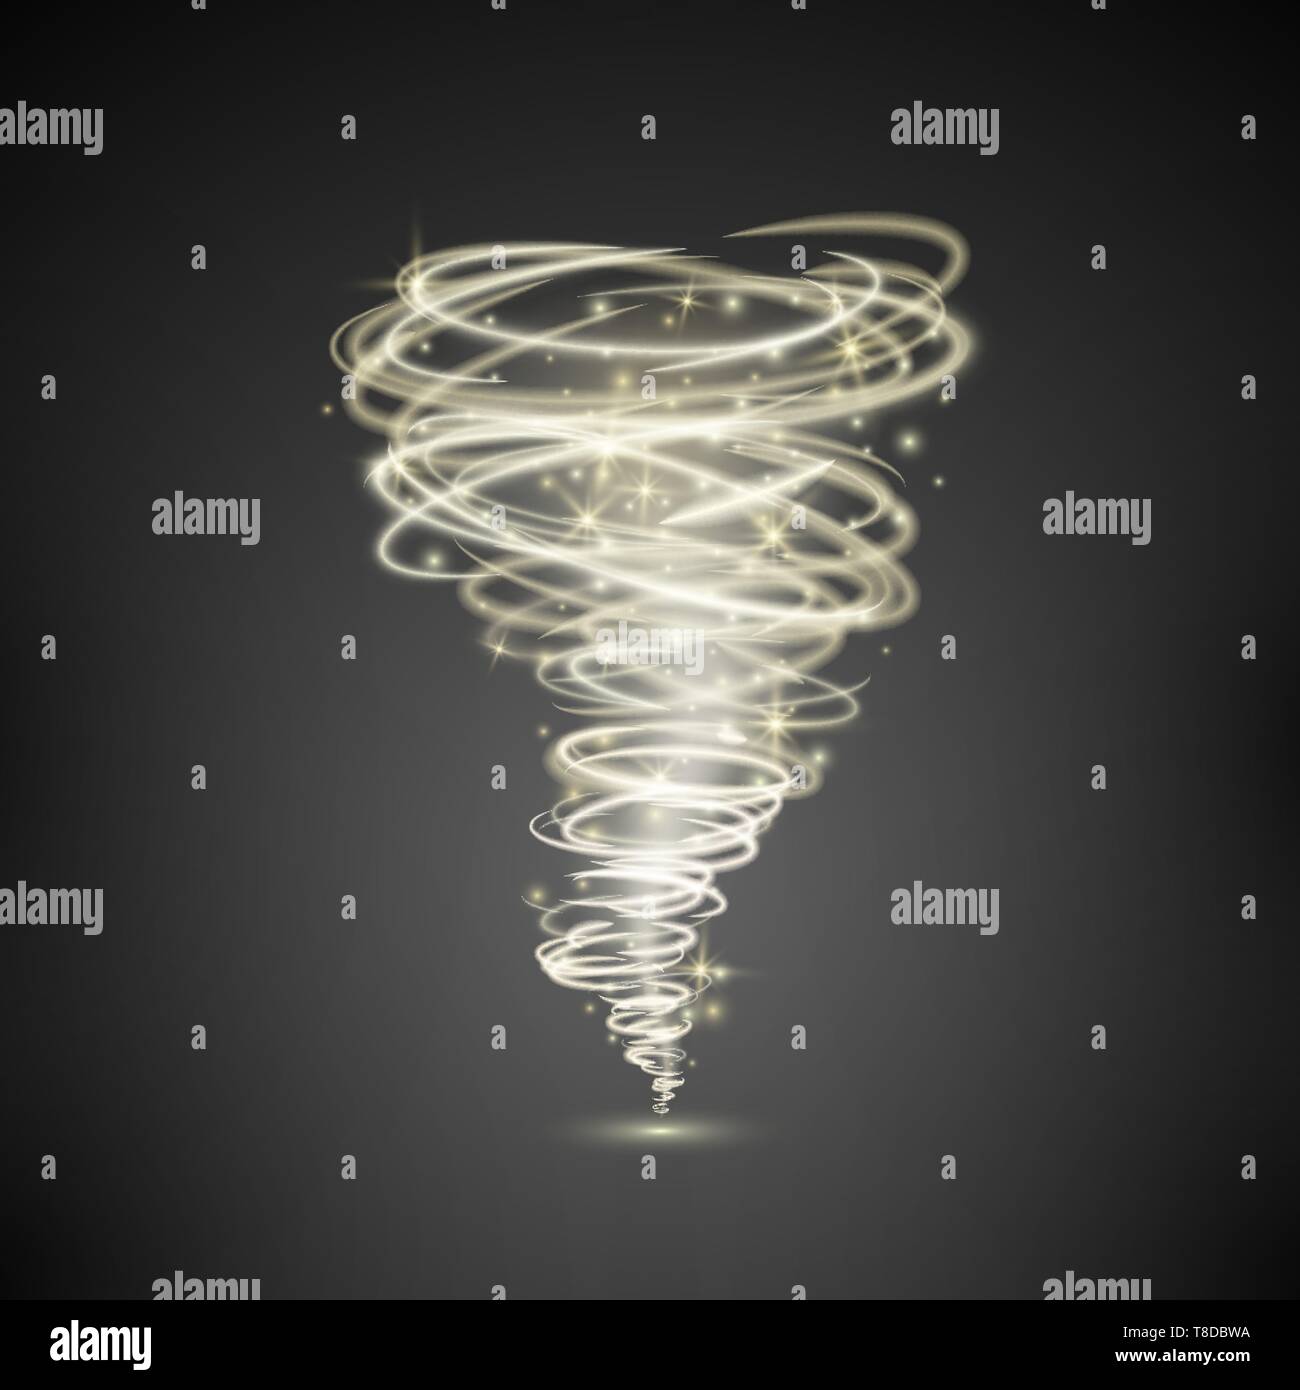 Effetto di vortice o ciclone.luce astratta vortex tornado magica illuminazione. Illustrazione di vettore isolato su sfondo scuro Illustrazione Vettoriale